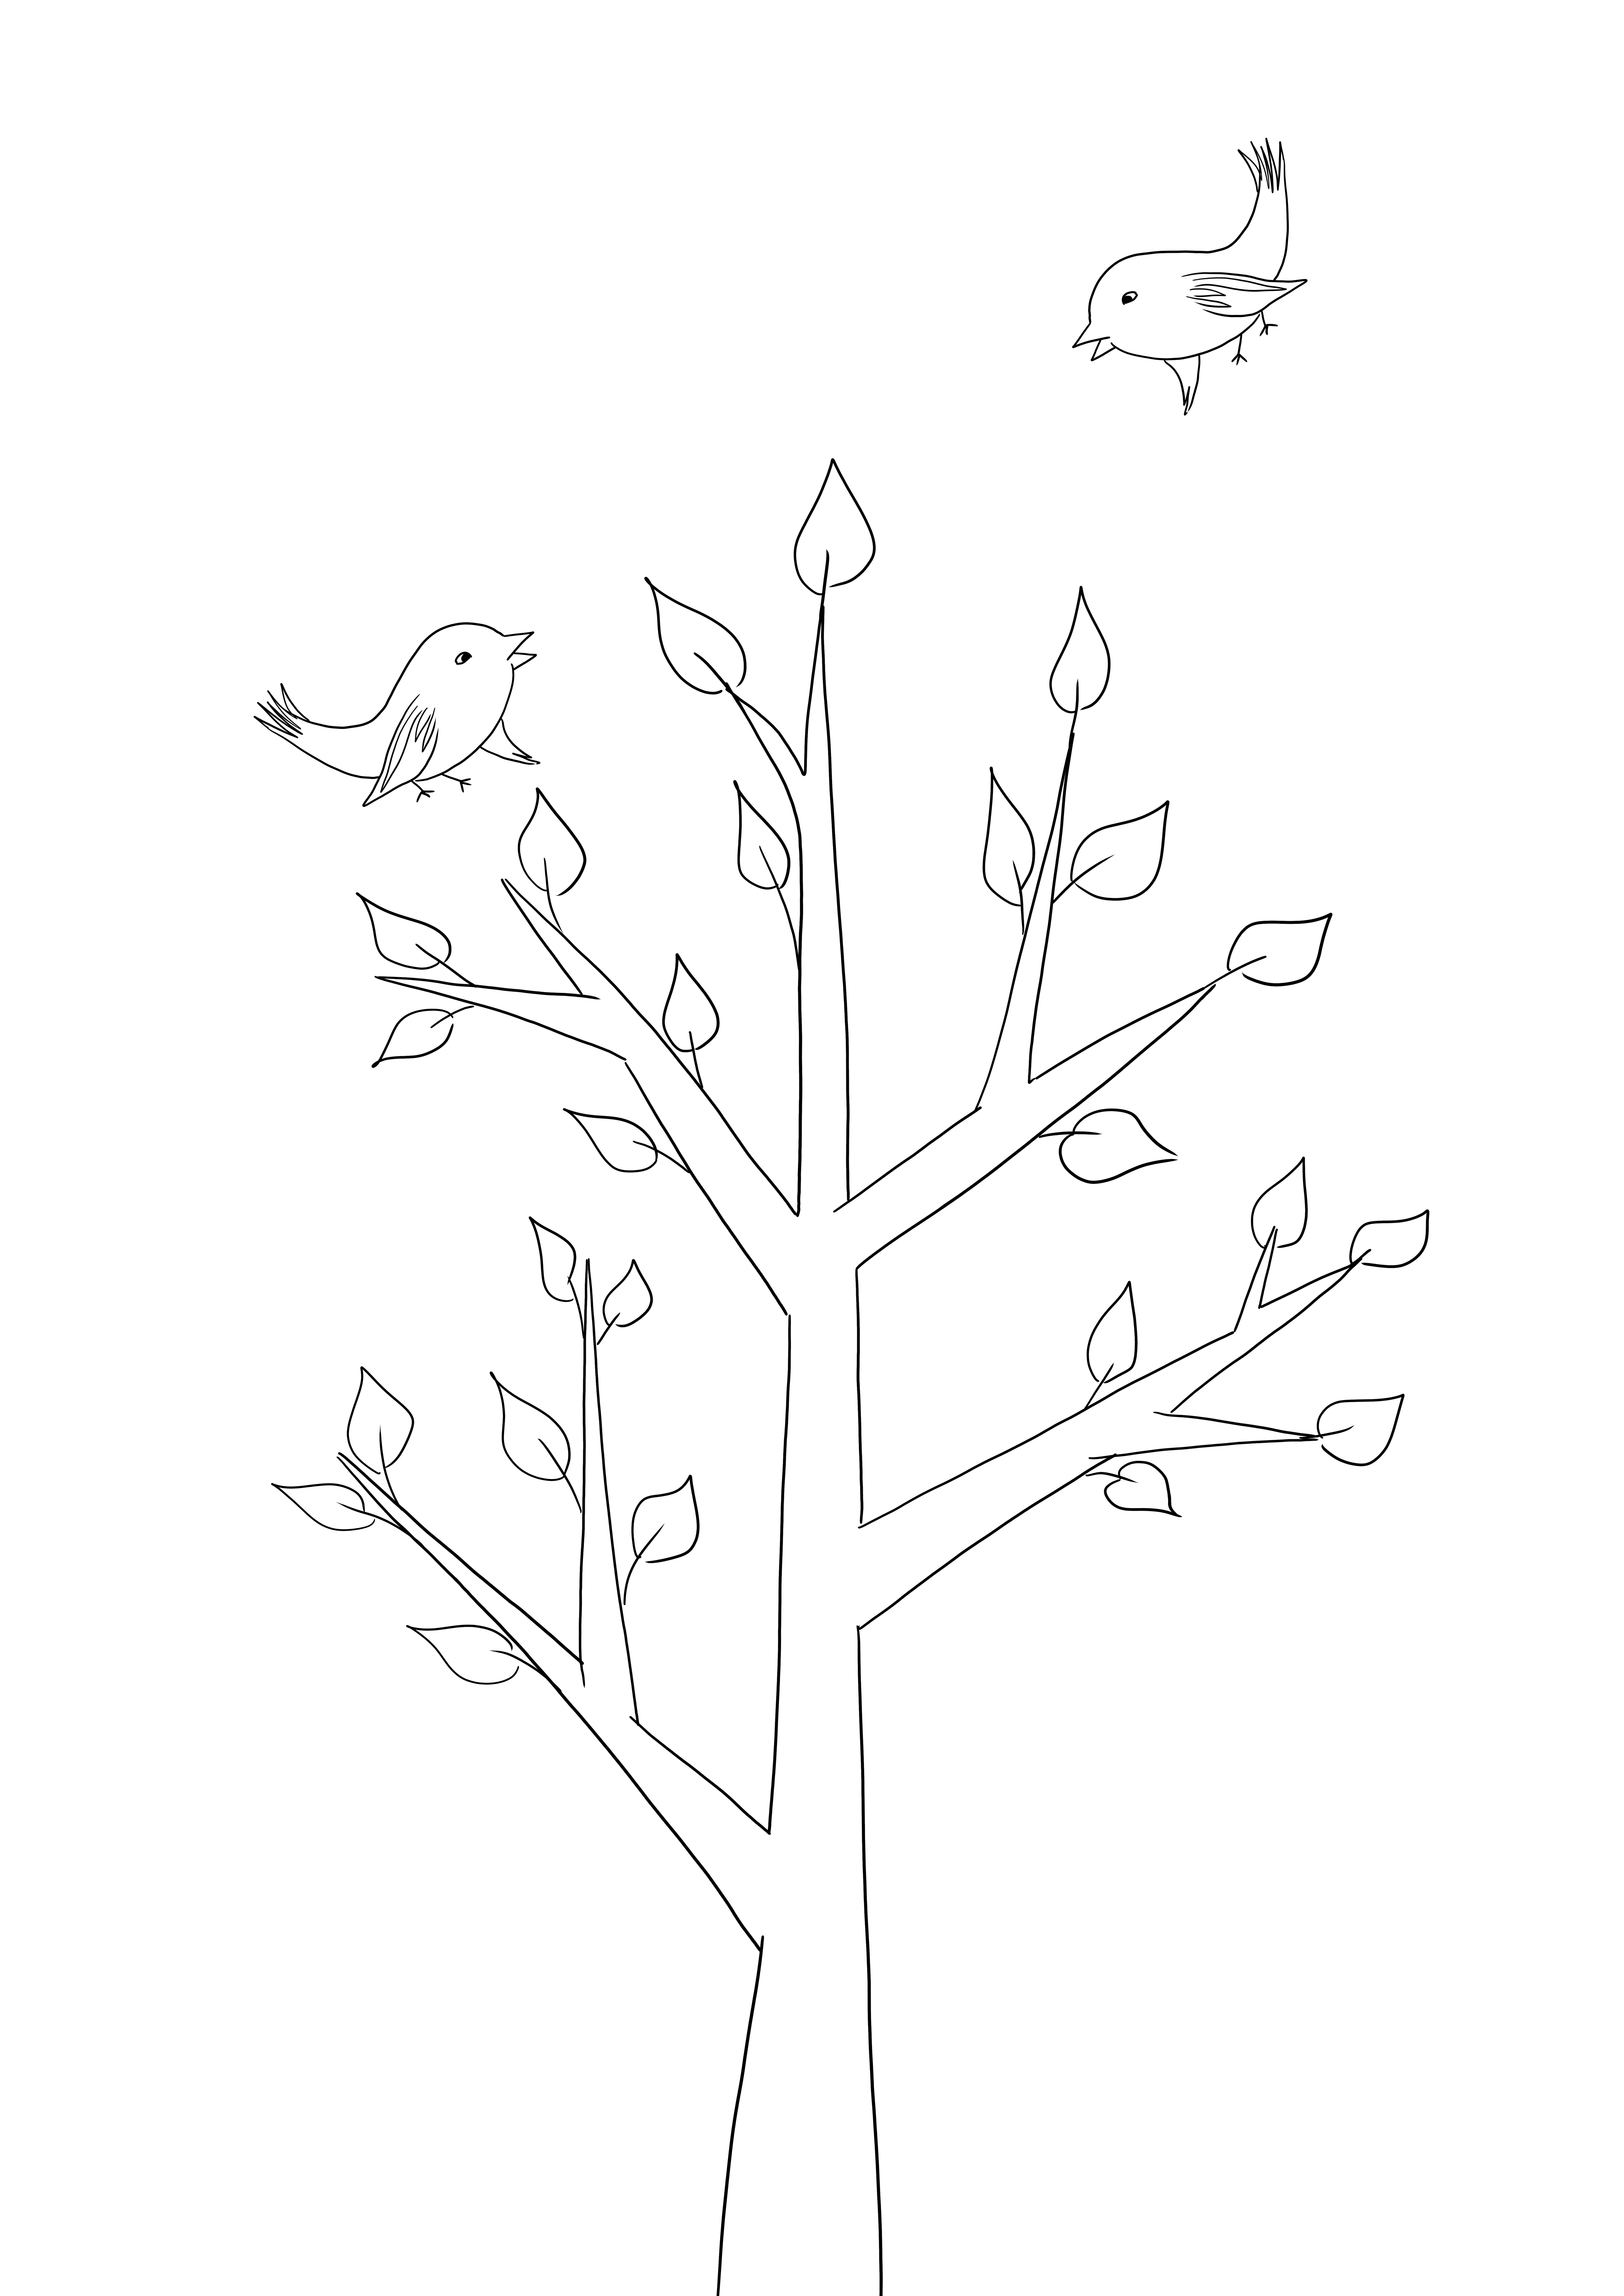 Lembar mewarnai pohon sederhana di musim semi gratis untuk diunduh